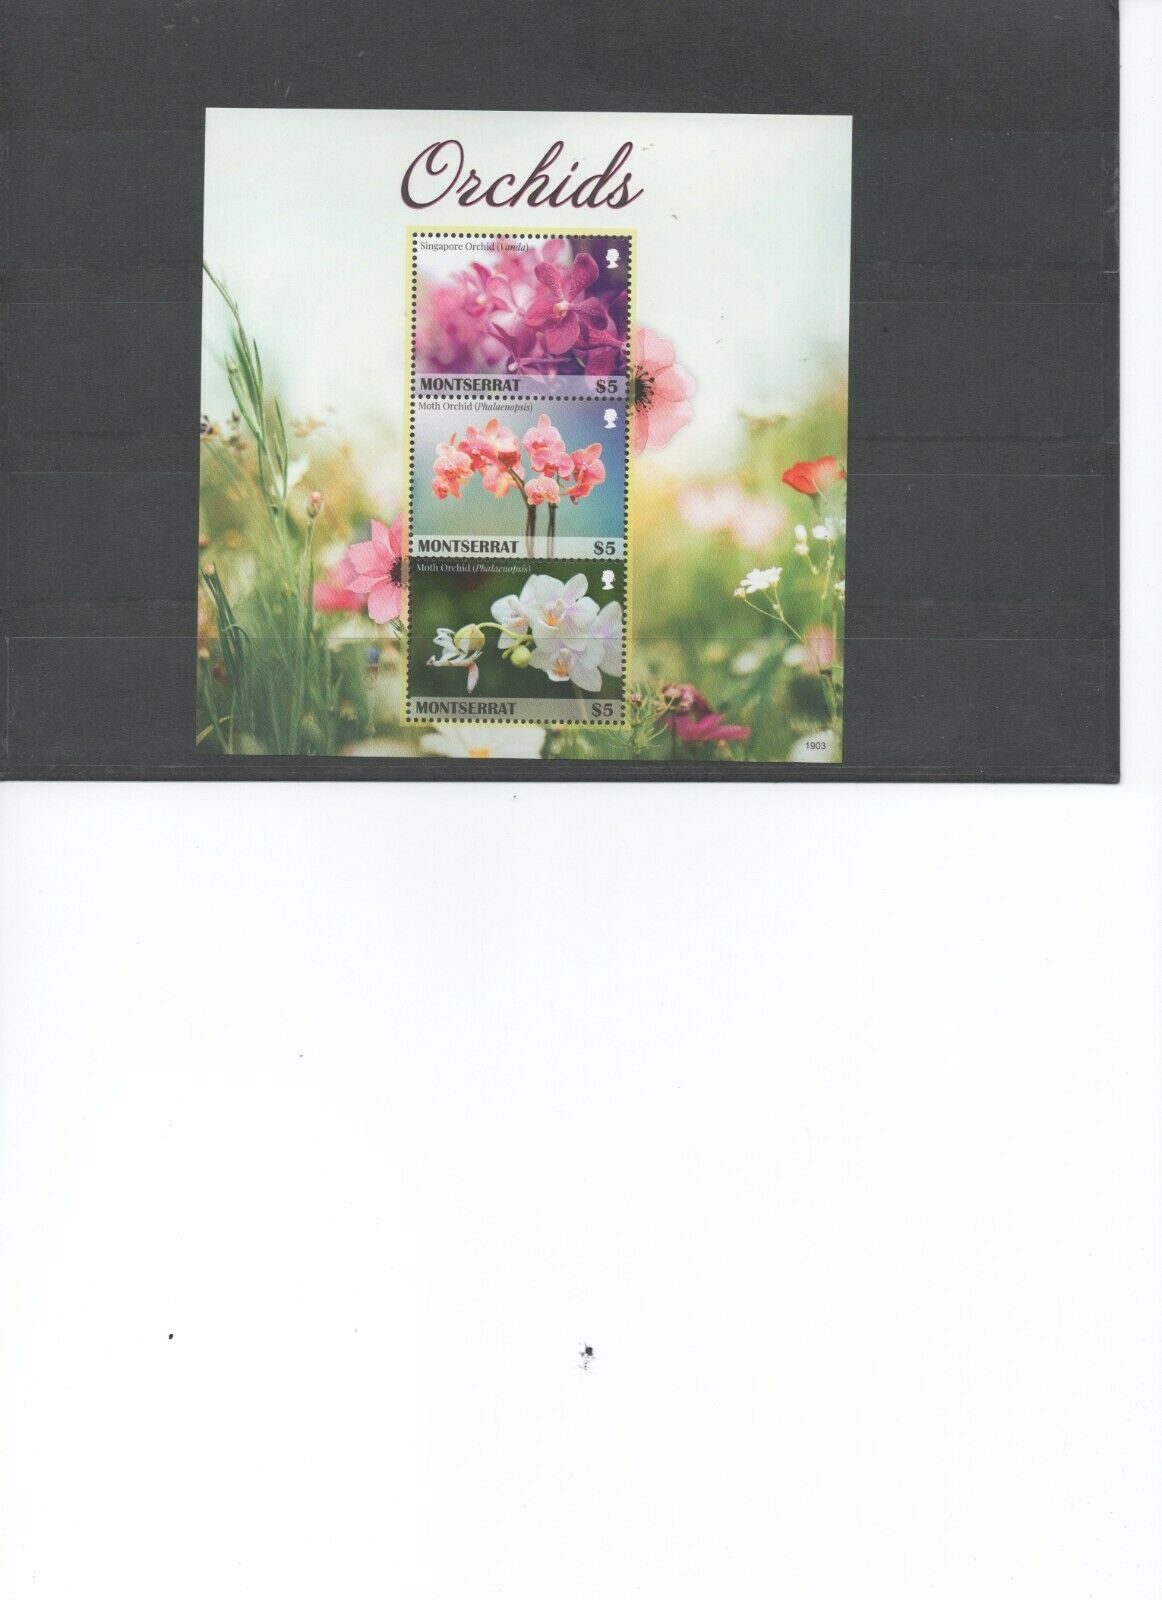 Montserrat 2019 Mnh Souvenier Sheet Of Orchids